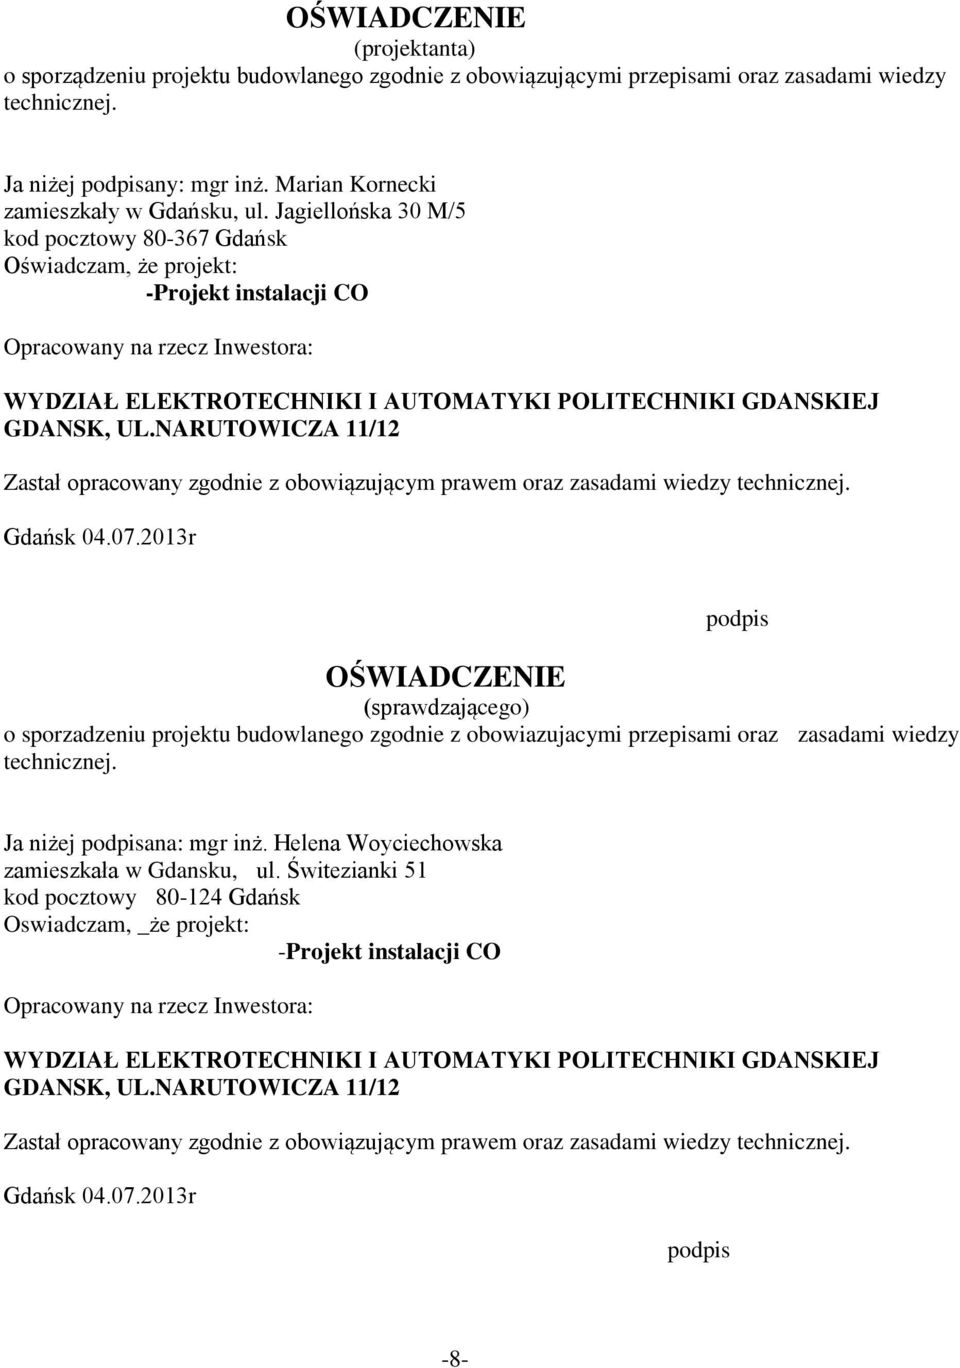 Jagiellońska 30 M/5 kod pocztowy 80-367 Gdańsk Oświadczam, że projekt: -Projekt instalacji CO Opracowany na rzecz Inwestora: WYDZIAŁ ELEKTROTECHNIKI I AUTOMATYKI POLITECHNIKI GDANSKIEJ GDANSK, UL.